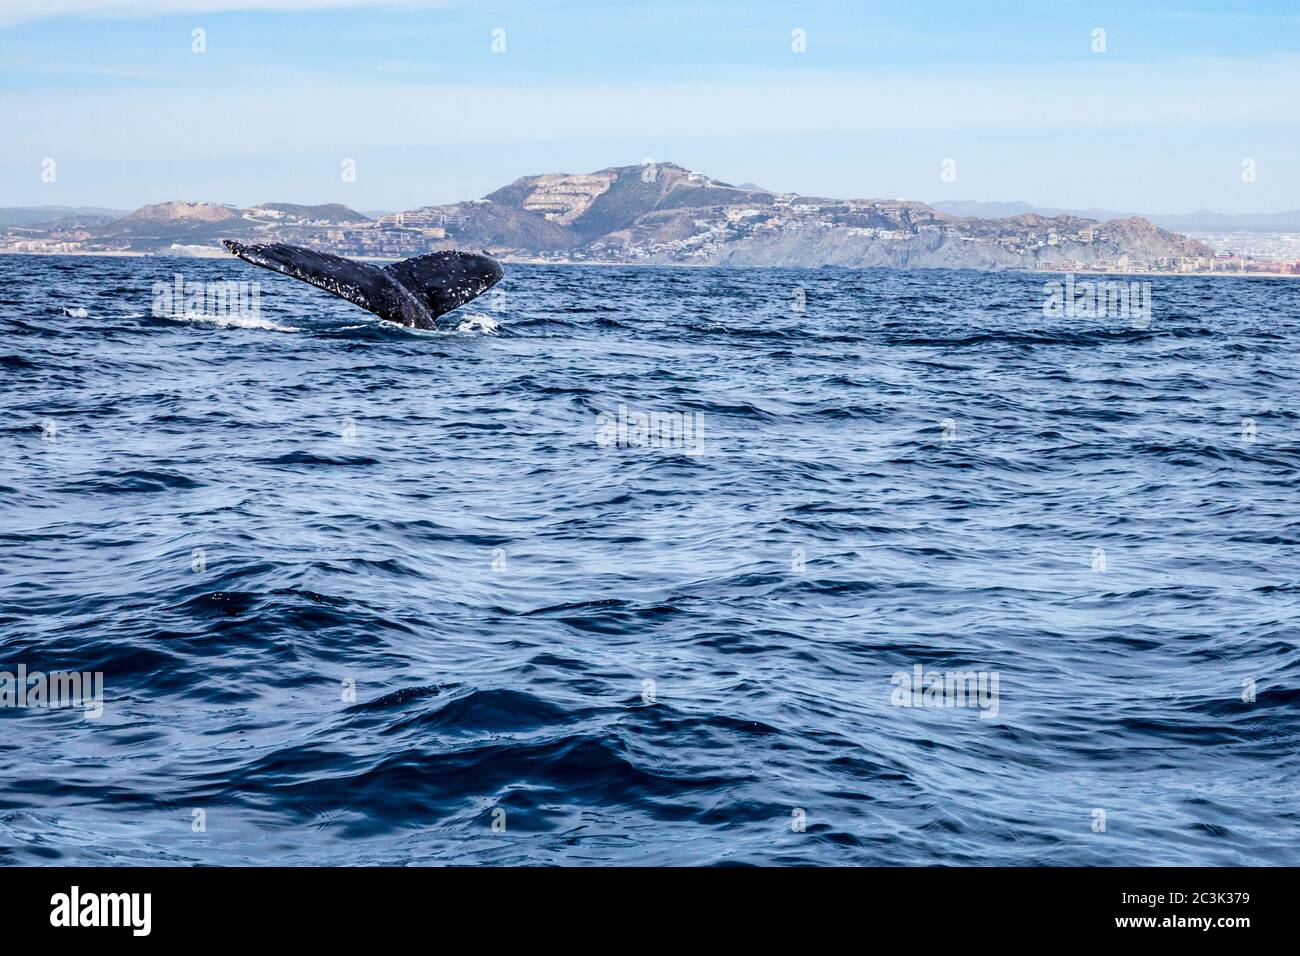 La queue d'une baleine à bosse qui plonge au large de la côte de Cabo San Lucas, Baja California sur, Mexique. Banque D'Images